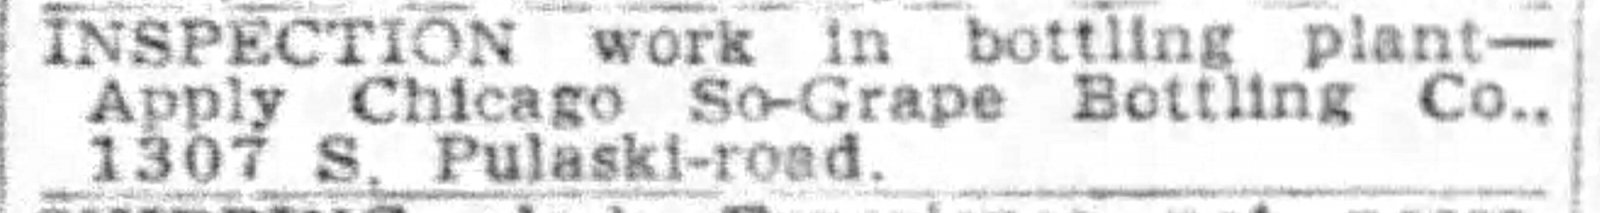 So Grape Bottling_Chicago_Tribune_Fri__Aug_2__1946_.jpg